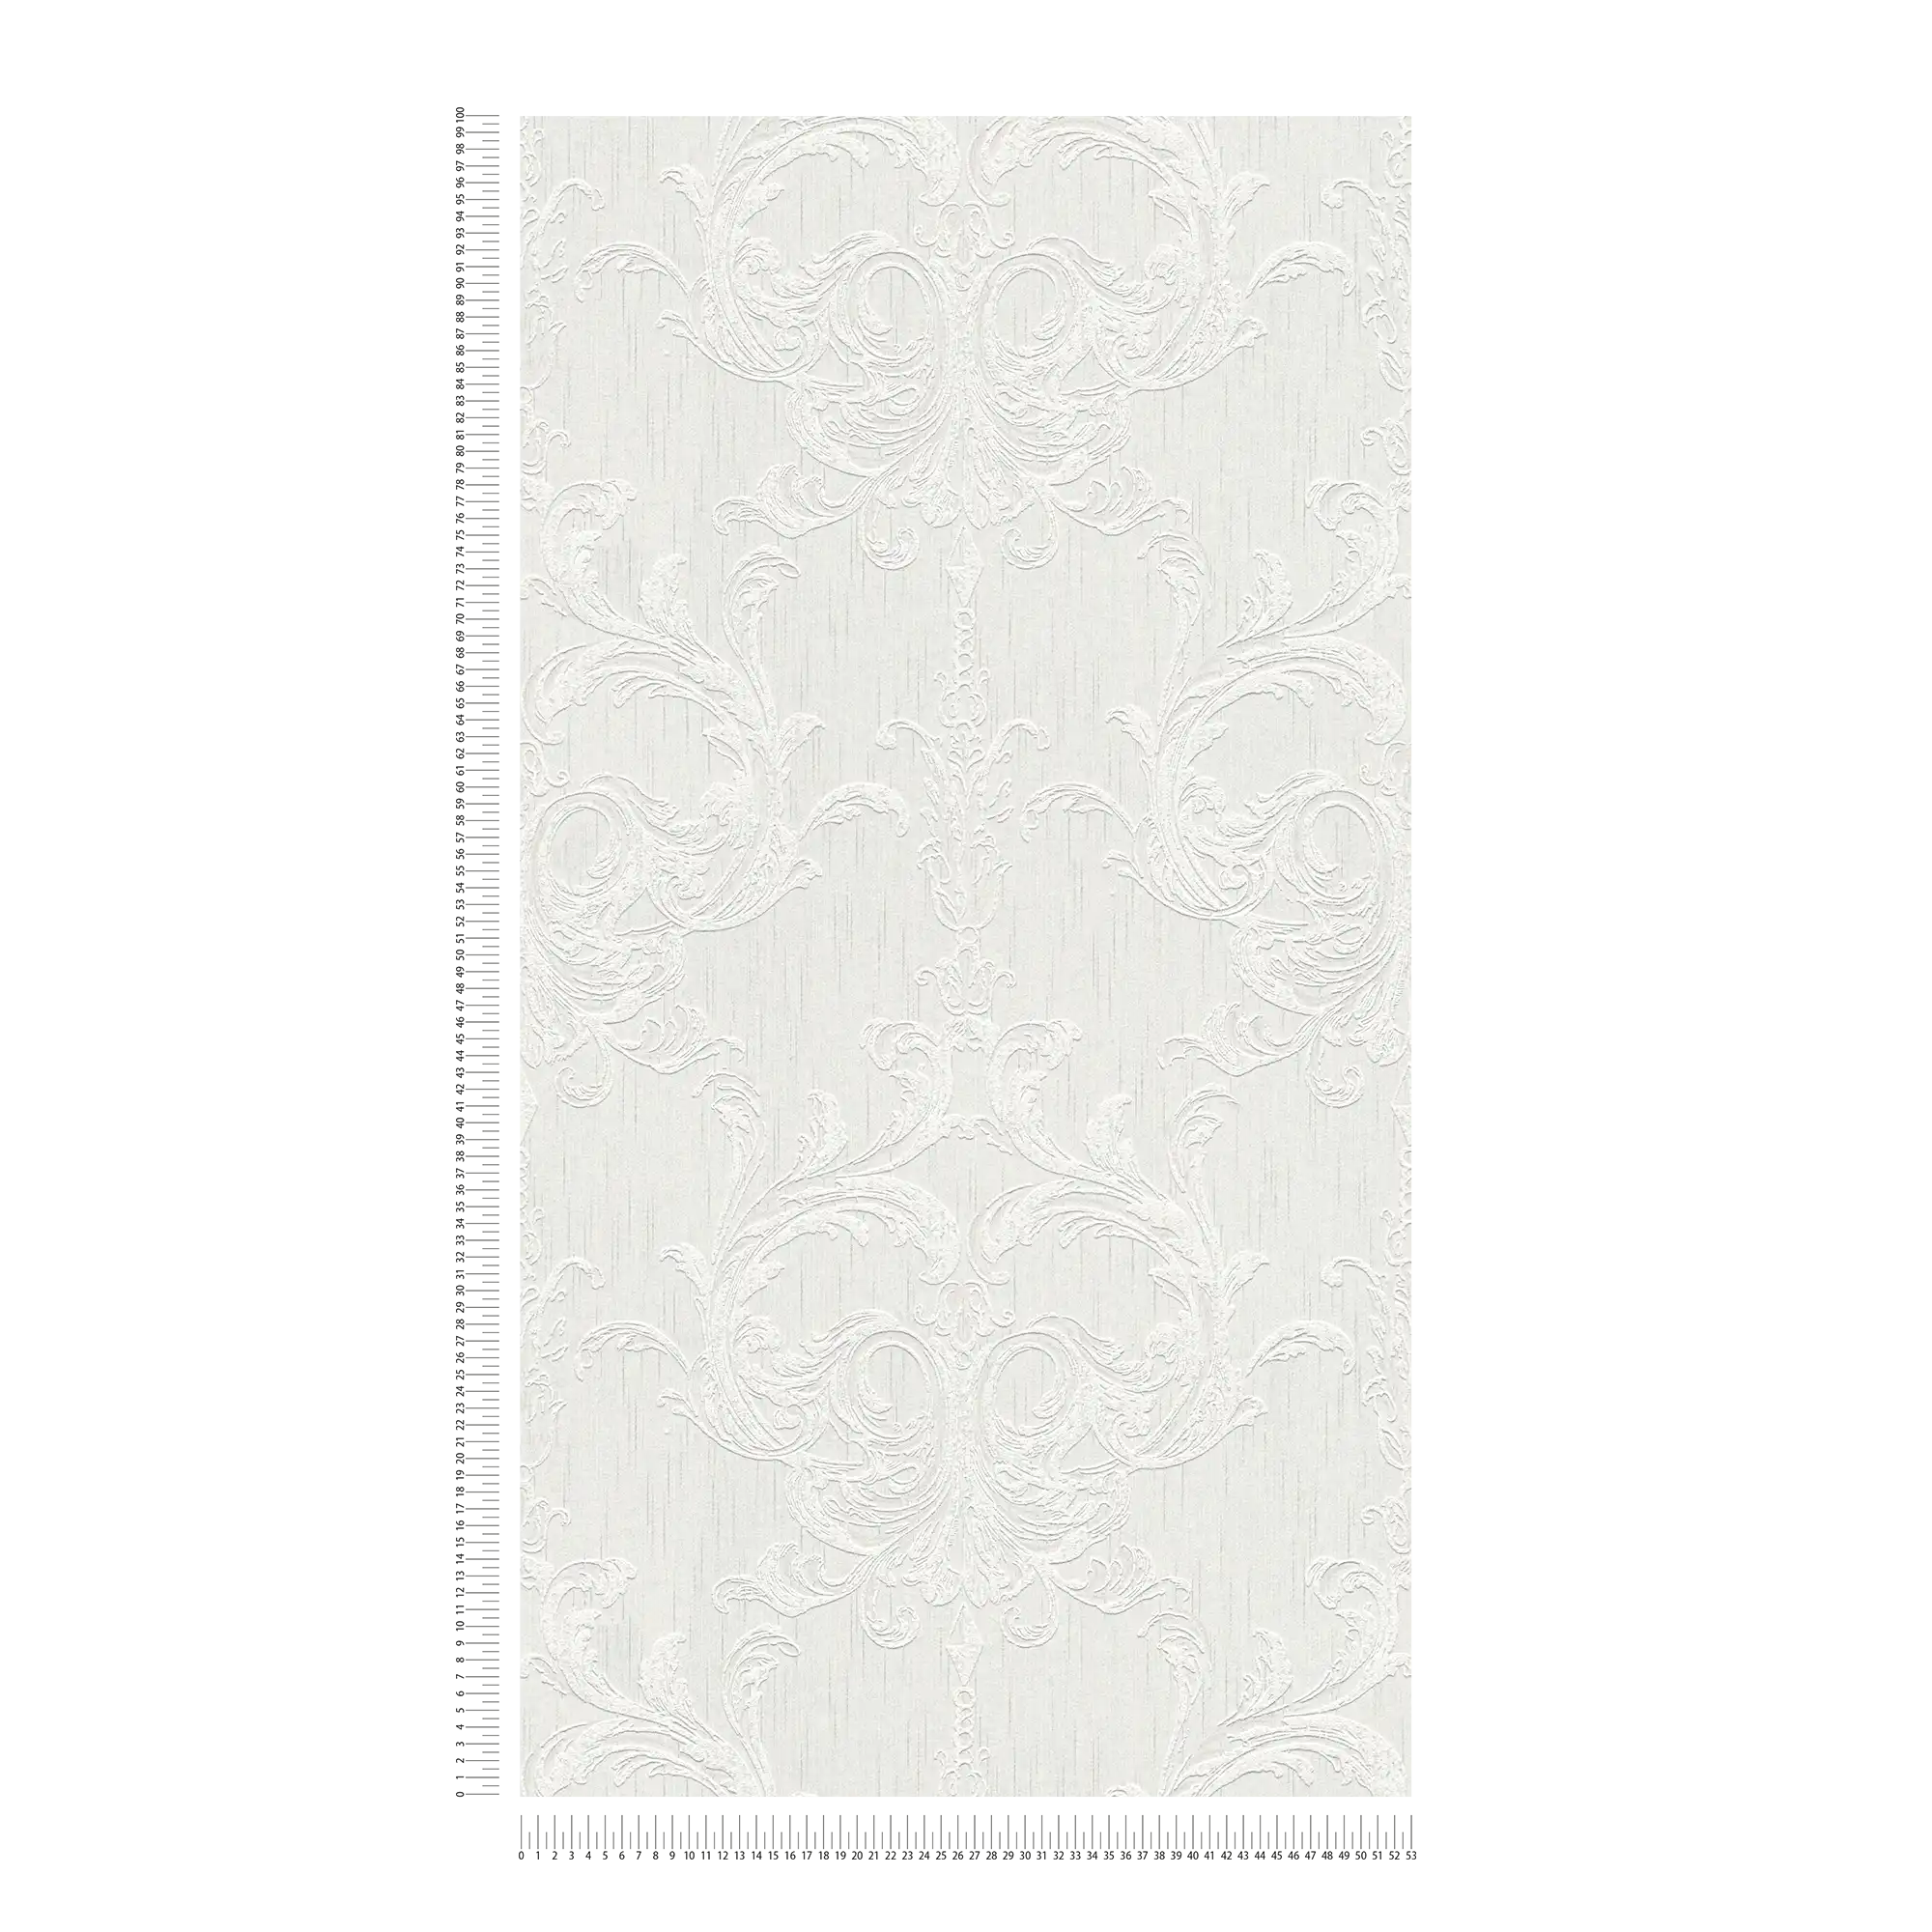             Carta da parati ornamentale con disegno a stucco e aspetto intonaco - grigio, bianco
        